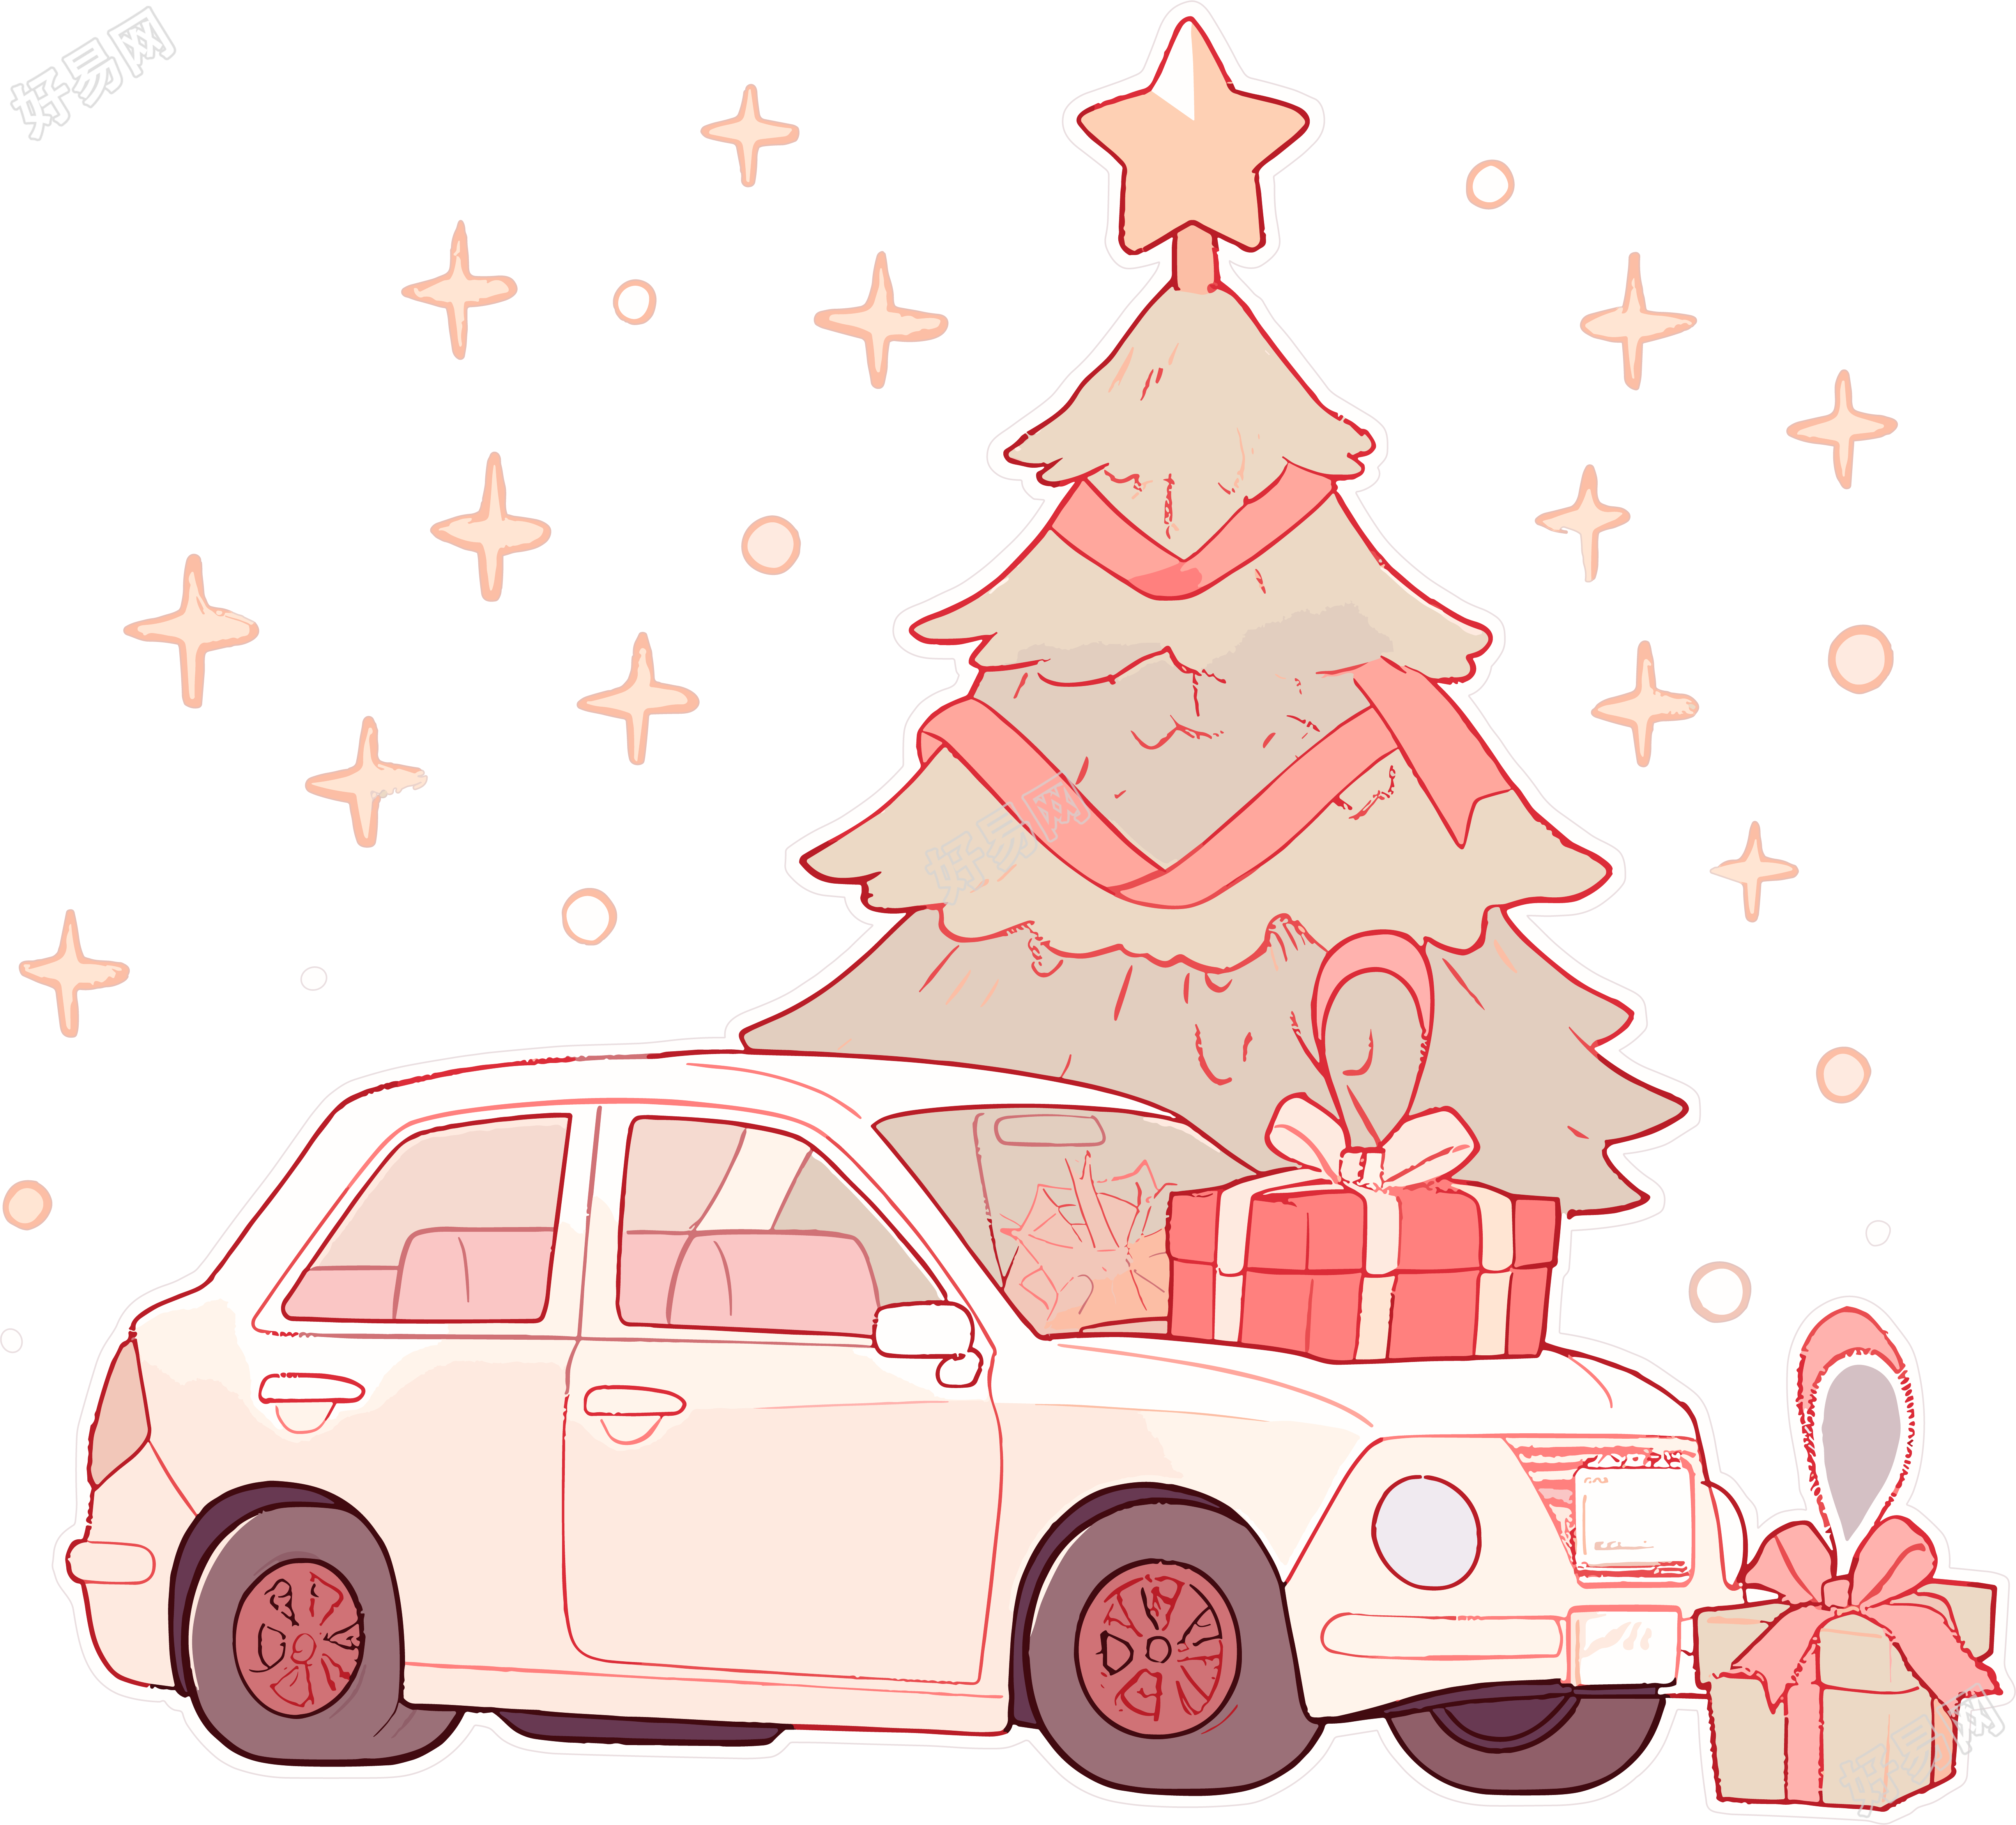 圣诞树和车图形设计插画